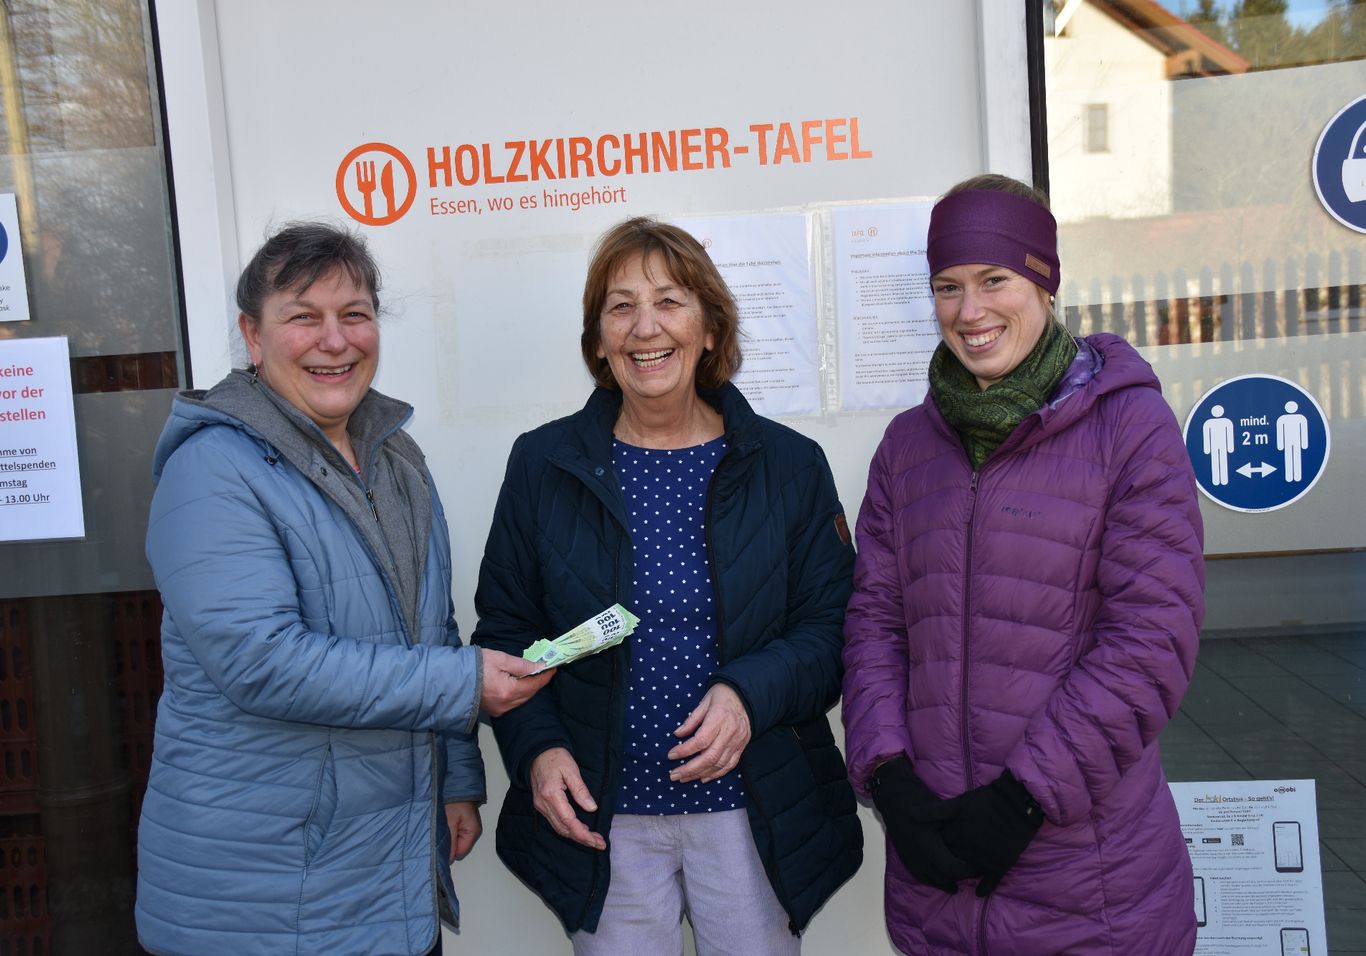 Personen auf dem Bild:  Mitte Frau Schmaderer von der Holzkirchner Tafel, links Frau Bader und rechts Frau Eitner, beide  Pfarrgemeinderat Pfarrei Oberwarngau.  